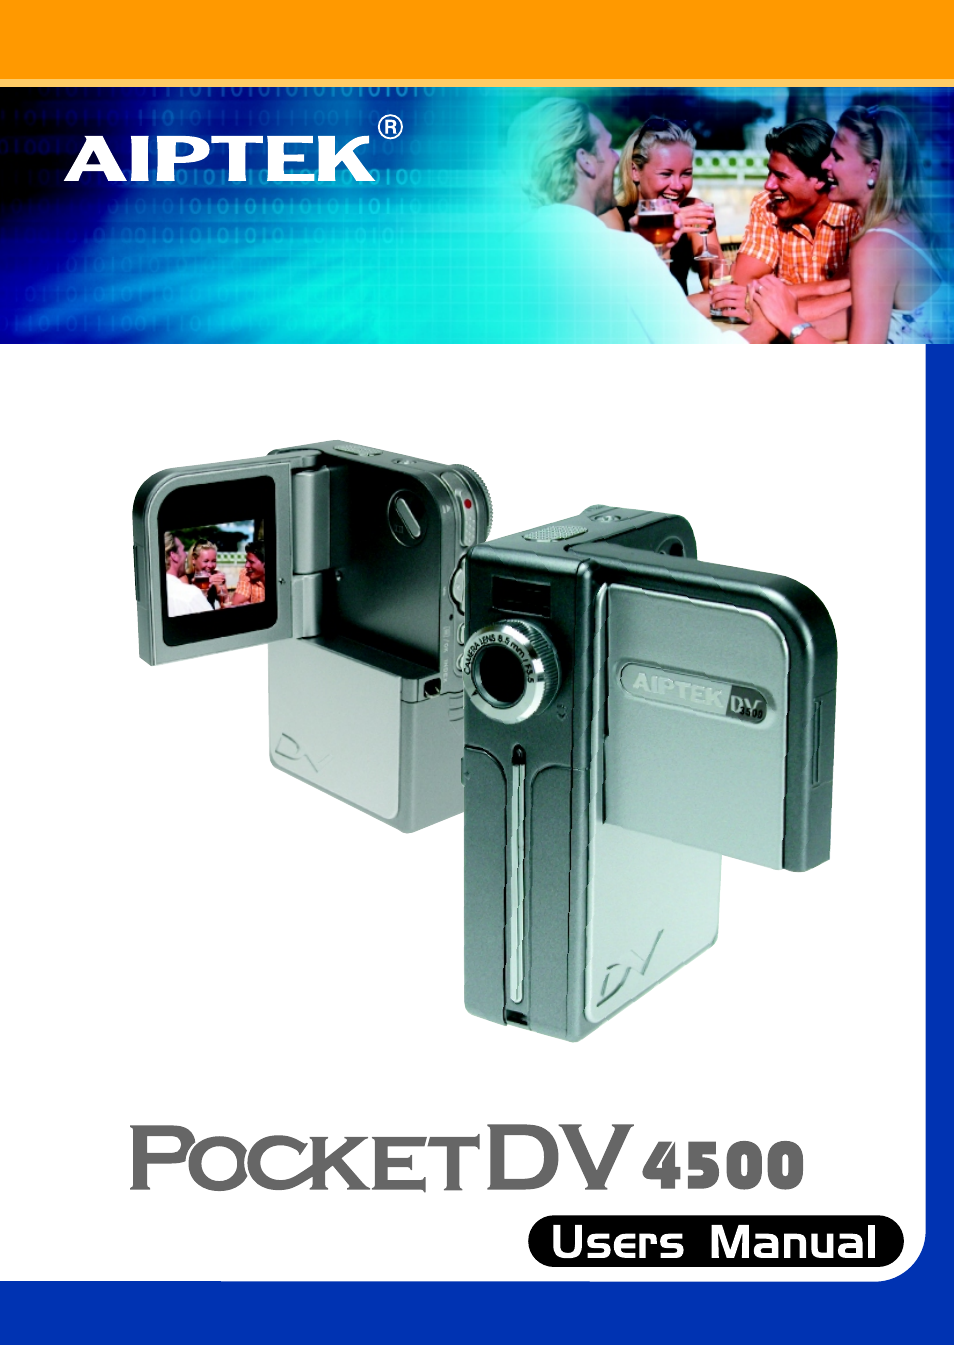 AIPTEK Pocket DV4500 User Manual | 86 pages